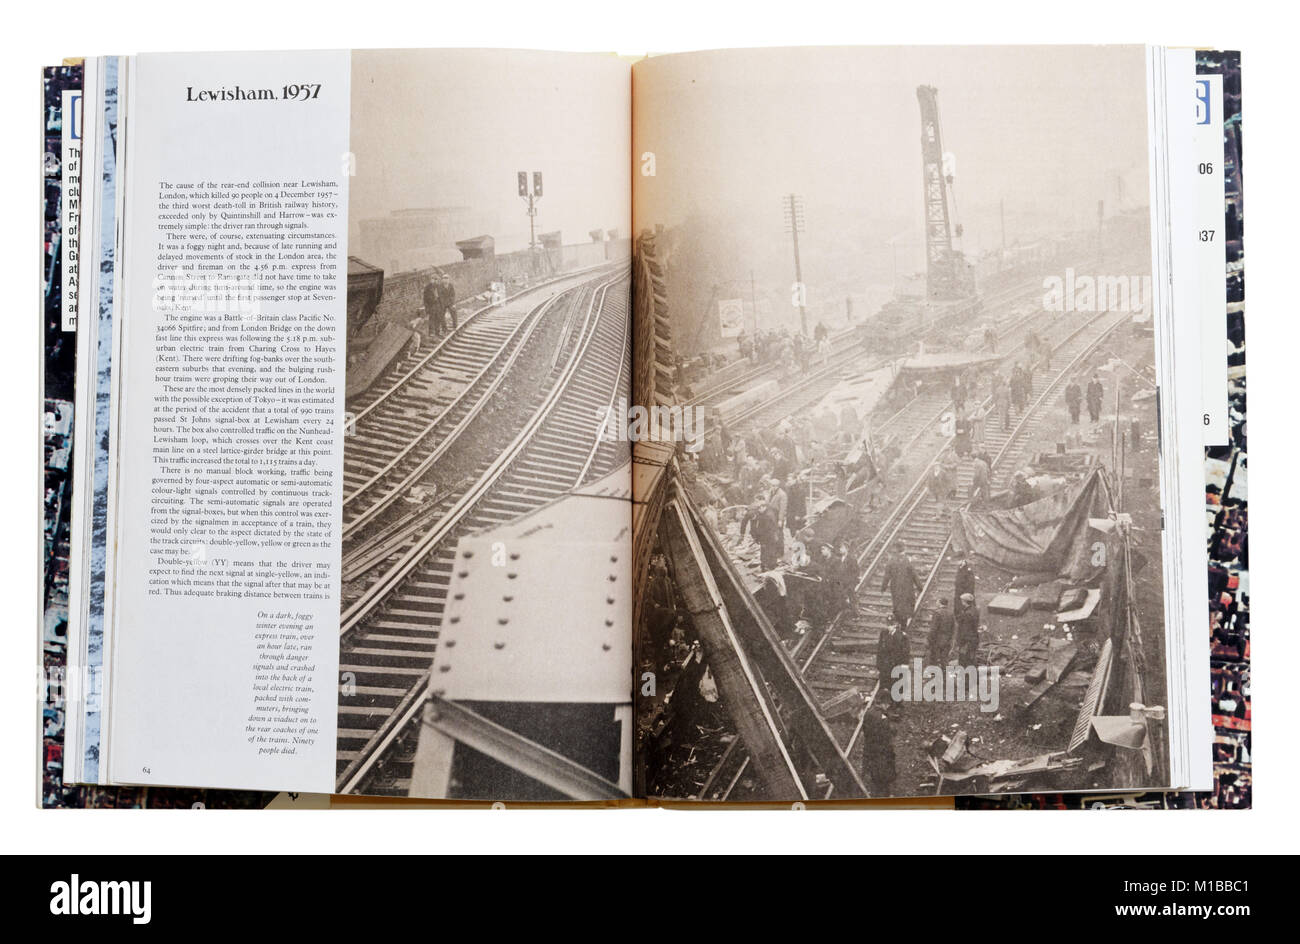 Un livre de catastrophes naturelles ouvert à la page à propos de l'accident ferroviaire de Lewisham 1957 Banque D'Images